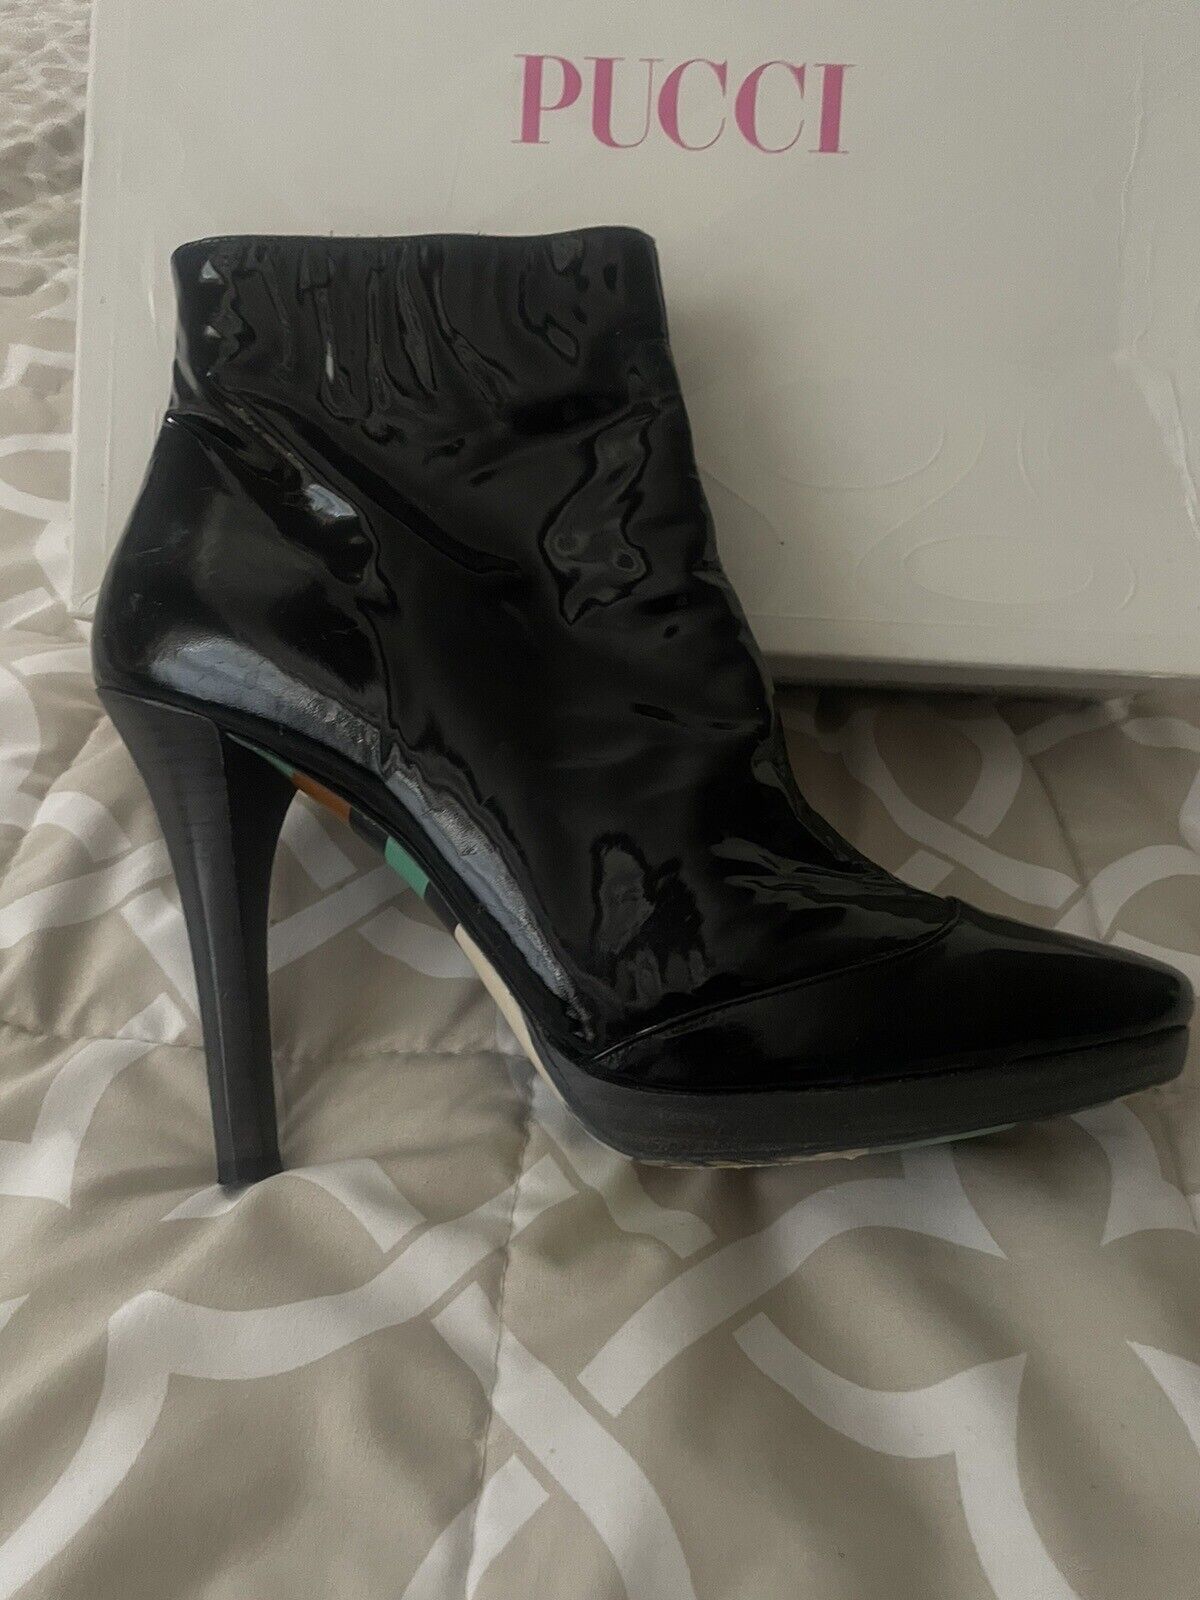 Emilio Pucci Short Black Patent Boots Size 40 - image 5